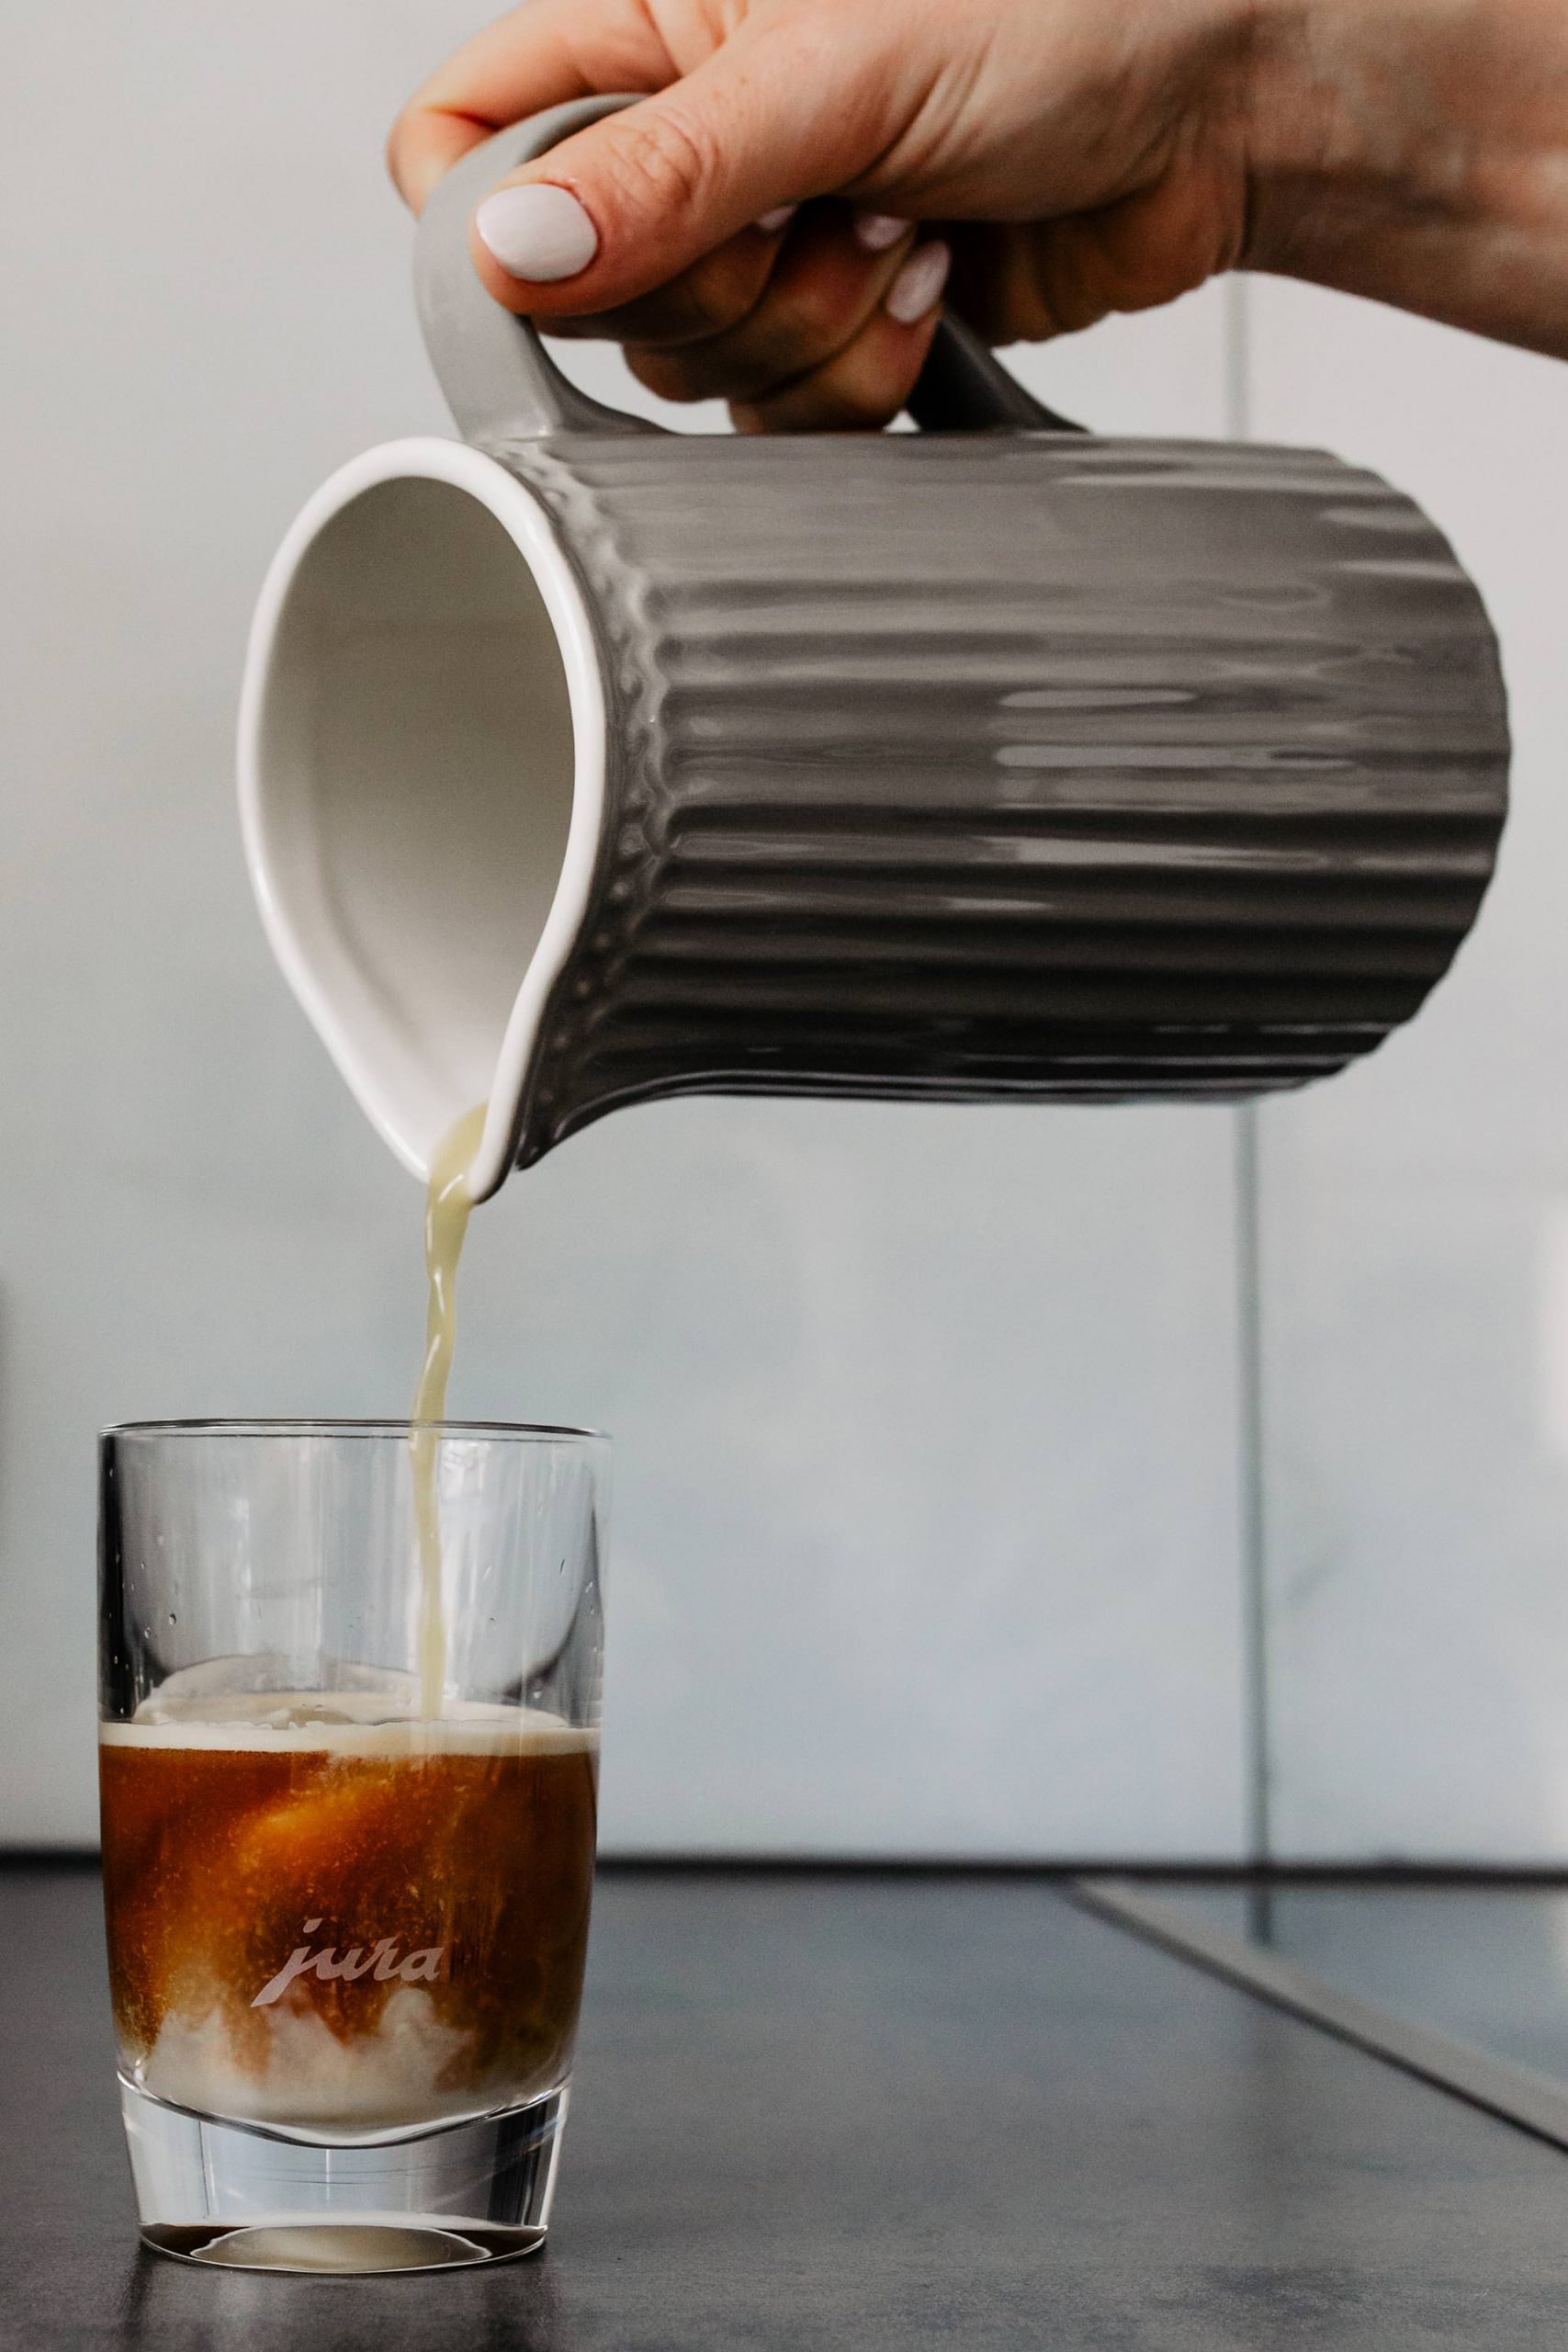 Anzeige. Cold Brew Kaffee ist weitaus mehr, als einfach kalter Kaffee. Was der essentielle Unterschied ist und ein leckeres Cold Brew Coffee Rezept findest du jetzt am Blog. www.whoismocca.com